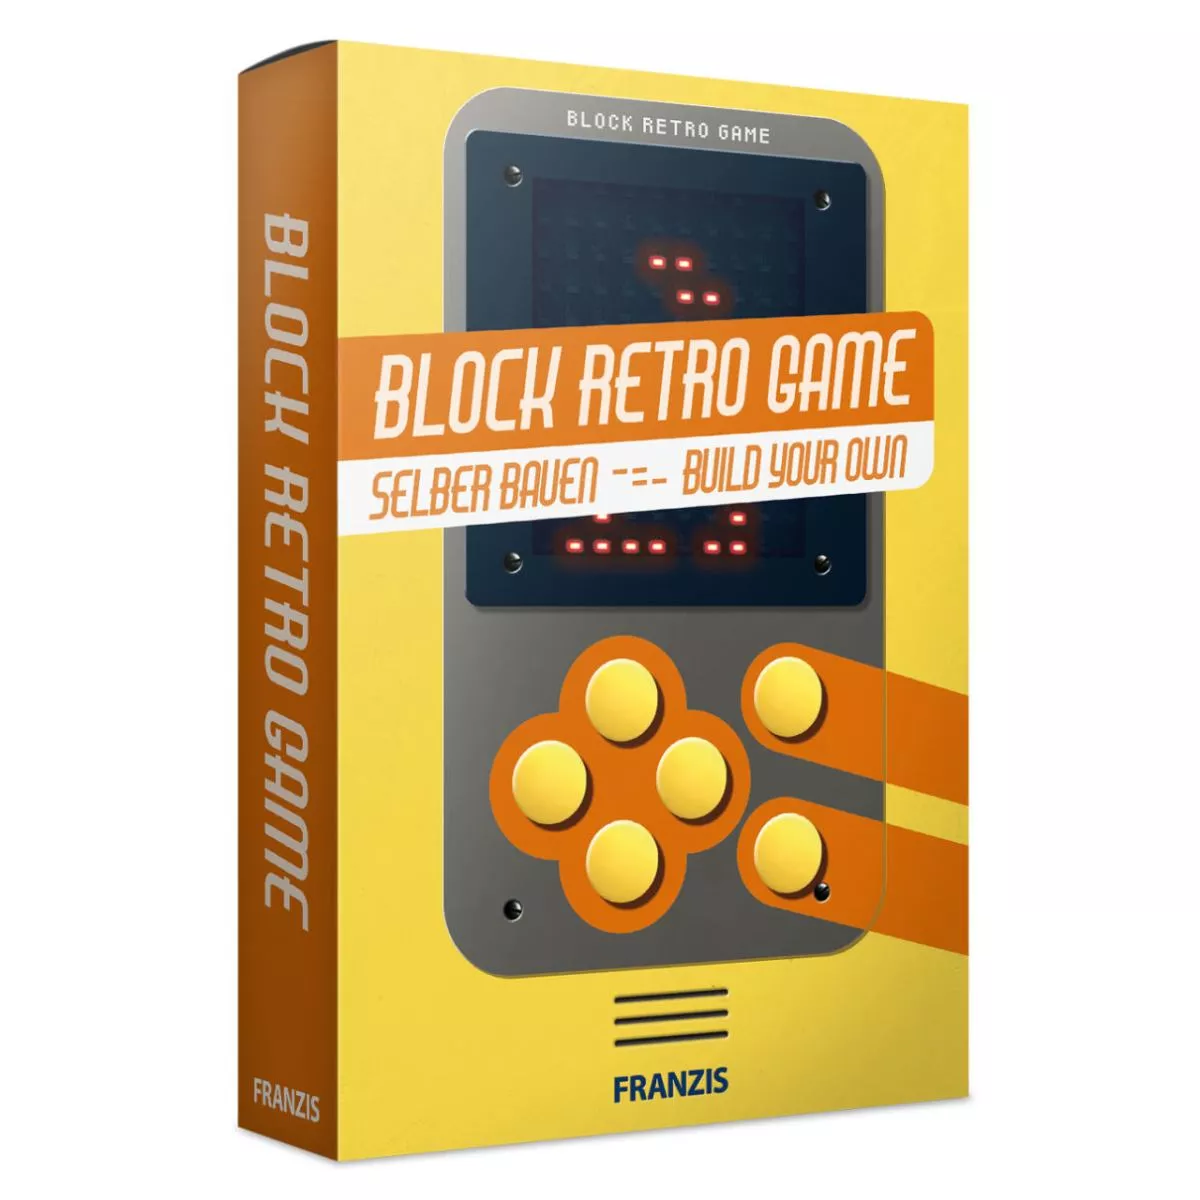 Elektronisches Retro-Spiel "Block" als Bausatz